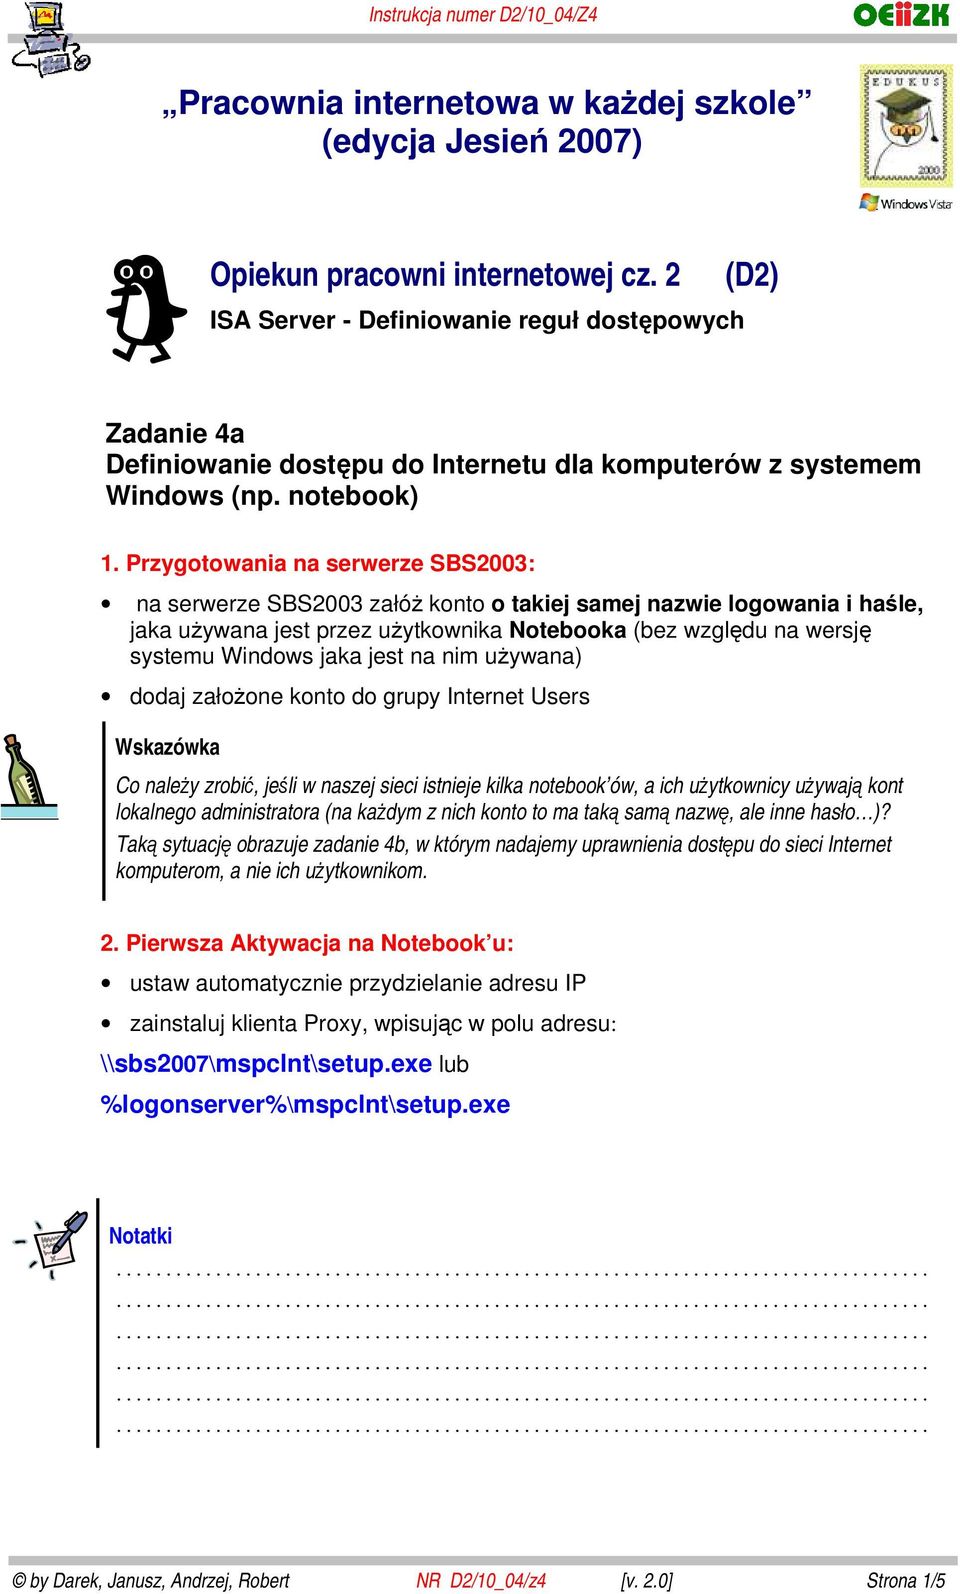 Przygotowania na serwerze SBS2003: na serwerze SBS2003 załóż konto o takiej samej nazwie logowania i haśle, jaka używana jest przez użytkownika Notebooka (bez względu na wersję systemu Windows jaka